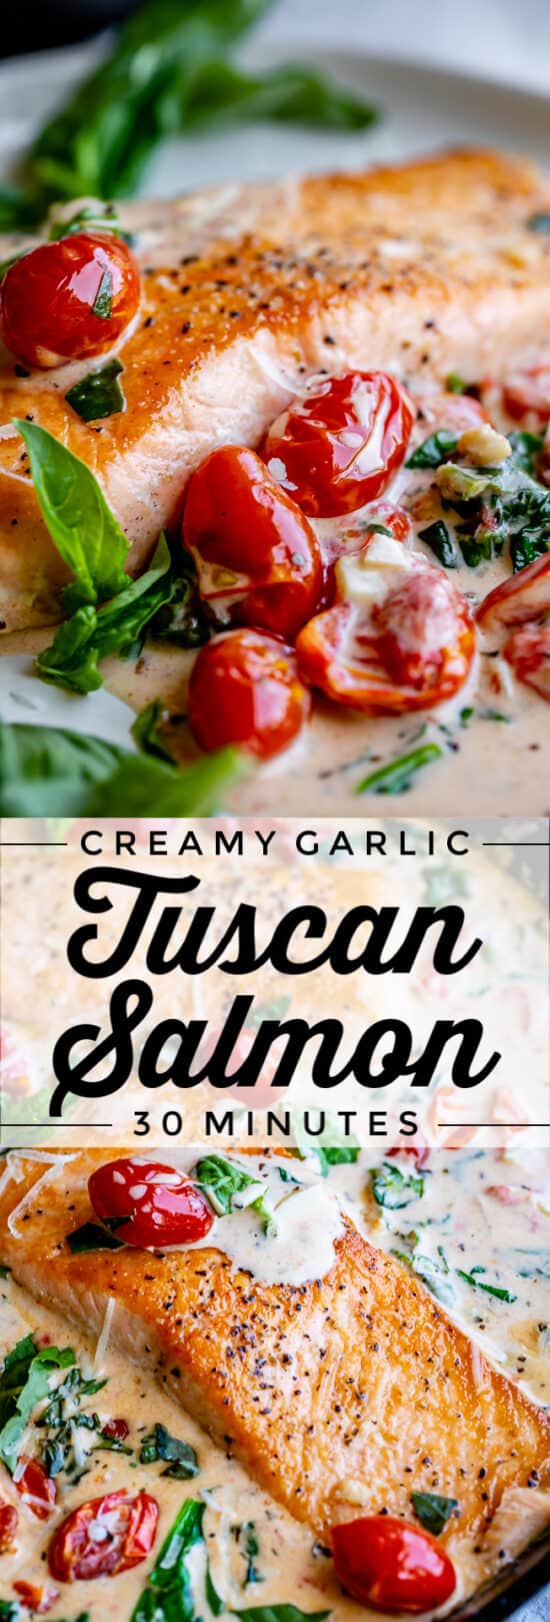 tuscan salmon recipe